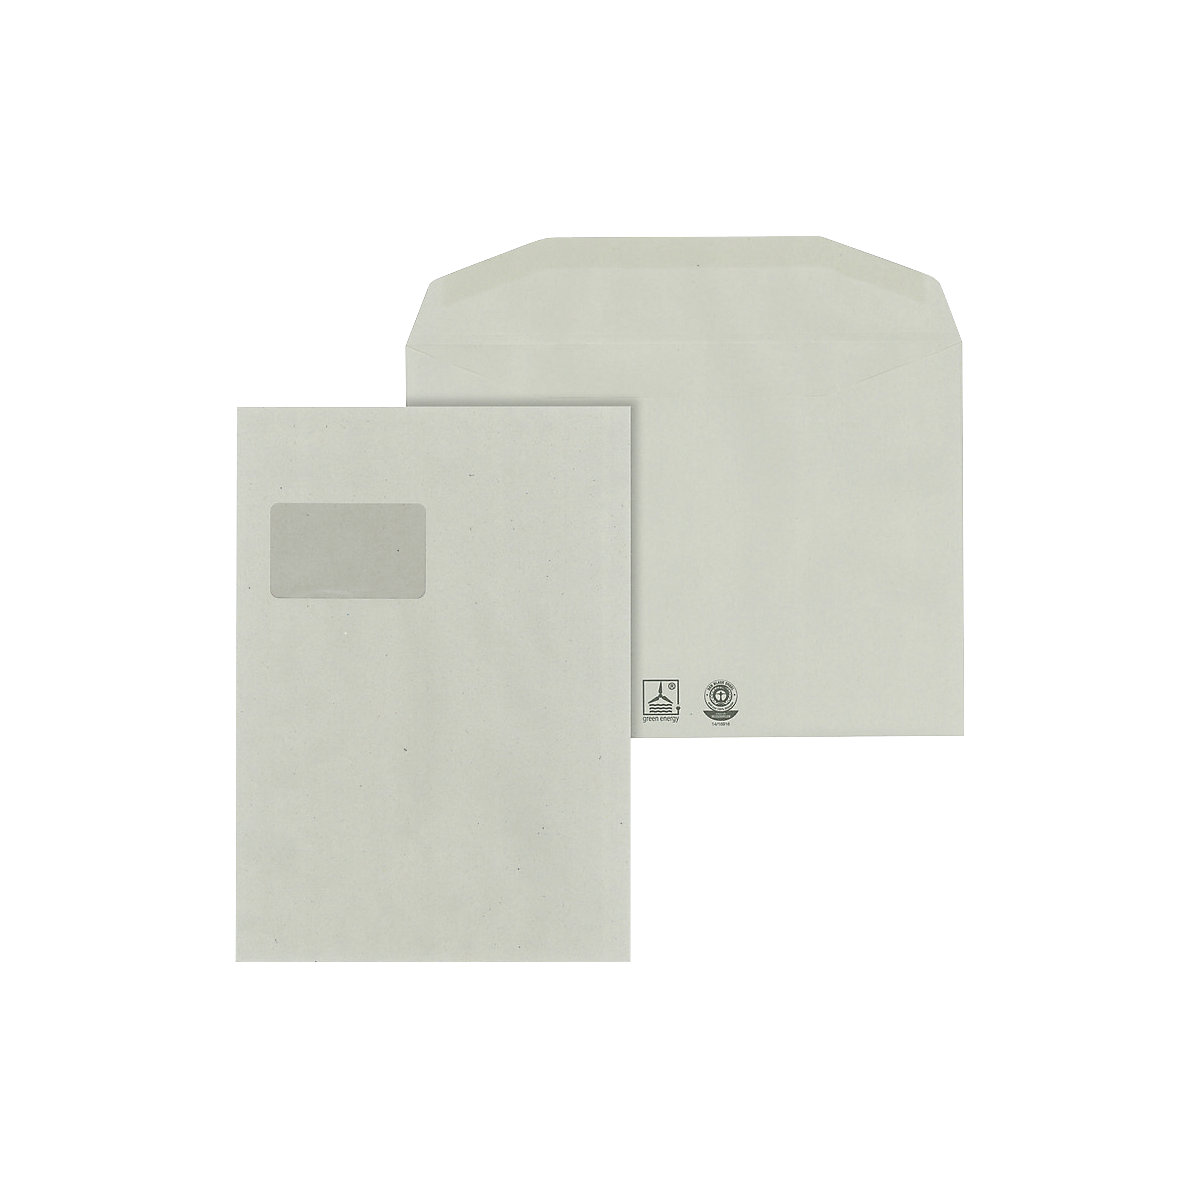 Buste – eurokraft basic, carta riciclata, con finestra, formato C4, conf. da 500 pz., a partire a 10 conf.-1